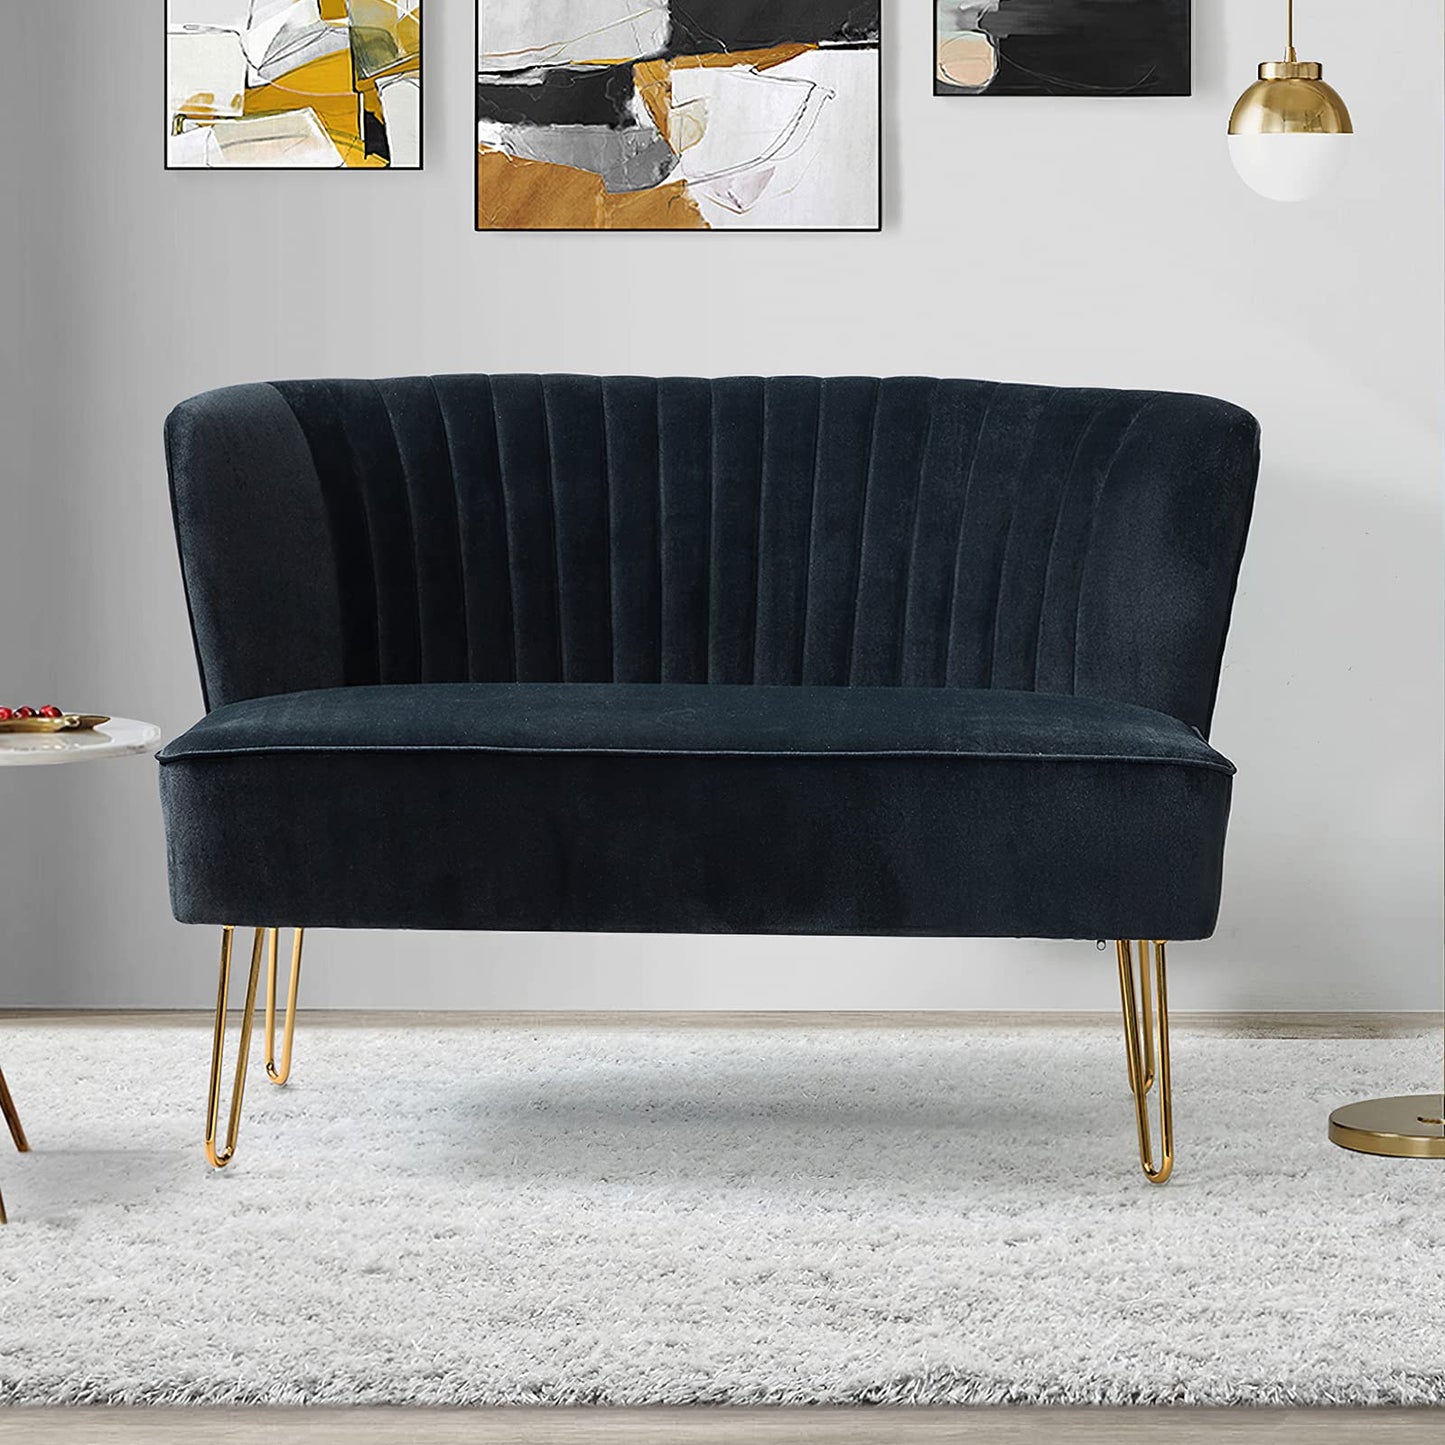 45-inch Modern Velvet Loveseat Sofa for Apartment Small Spaces